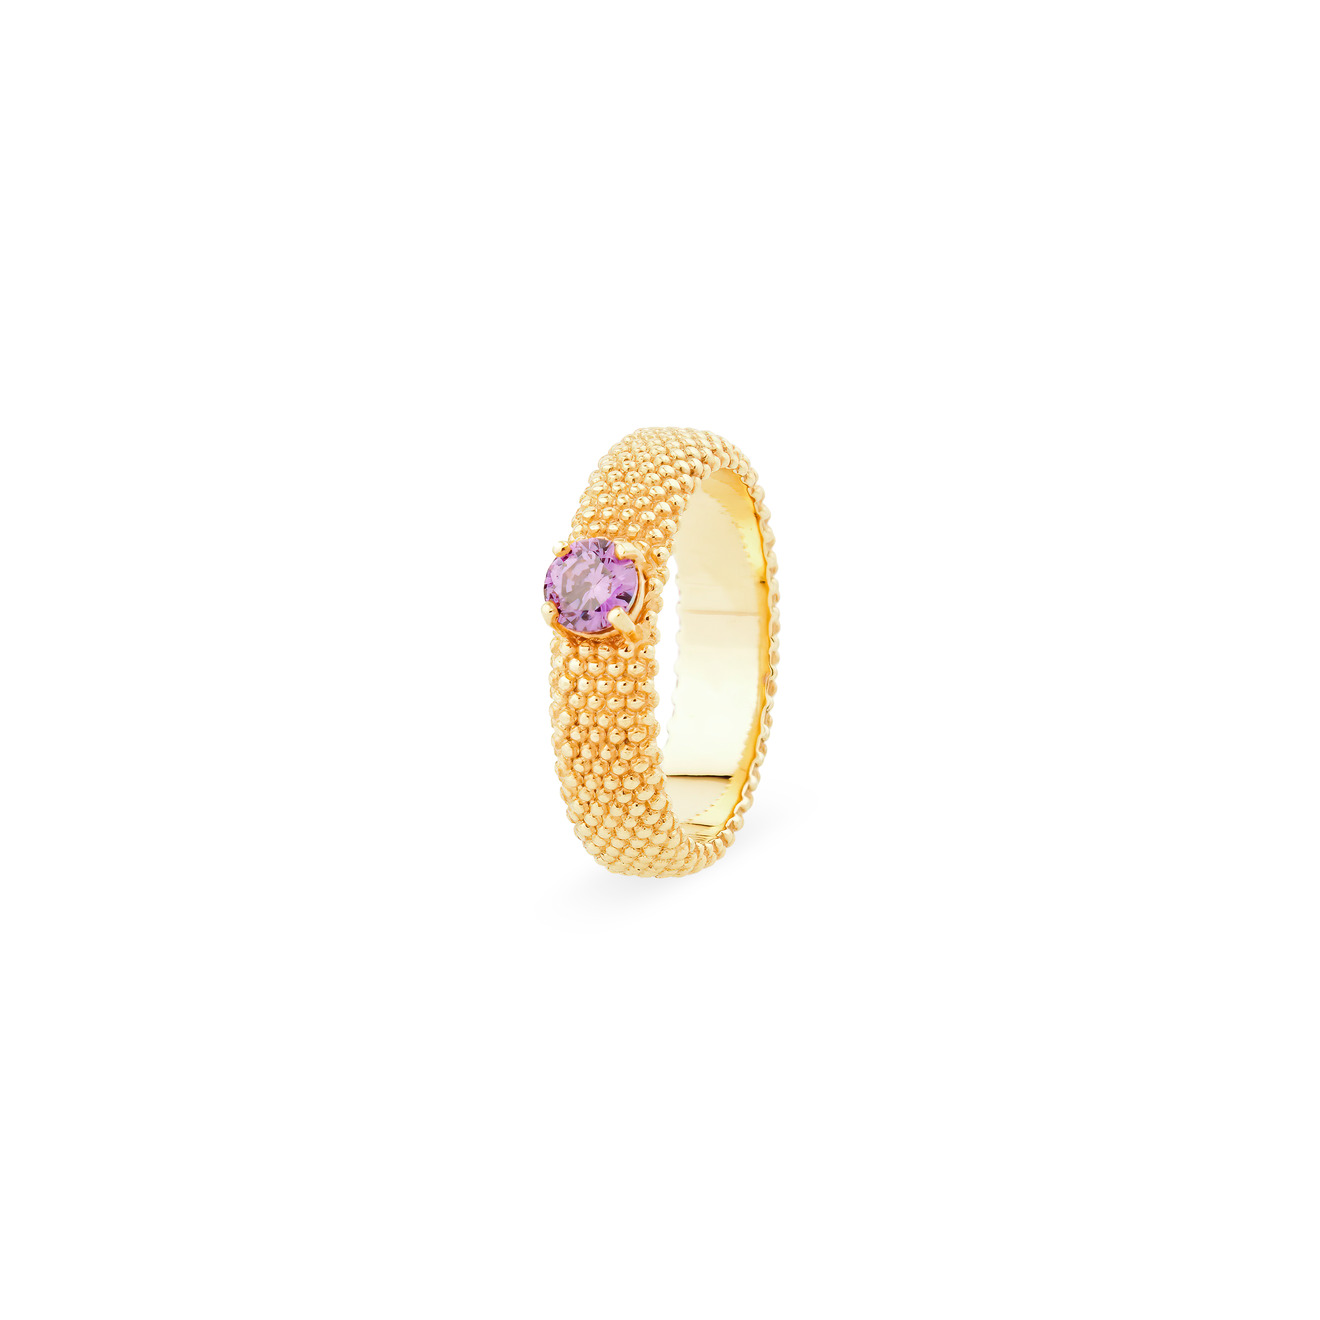 KRASHE jewellery Позолоченное кольцо «Золотые мурашки» с фиолетовым фианитом цена и фото